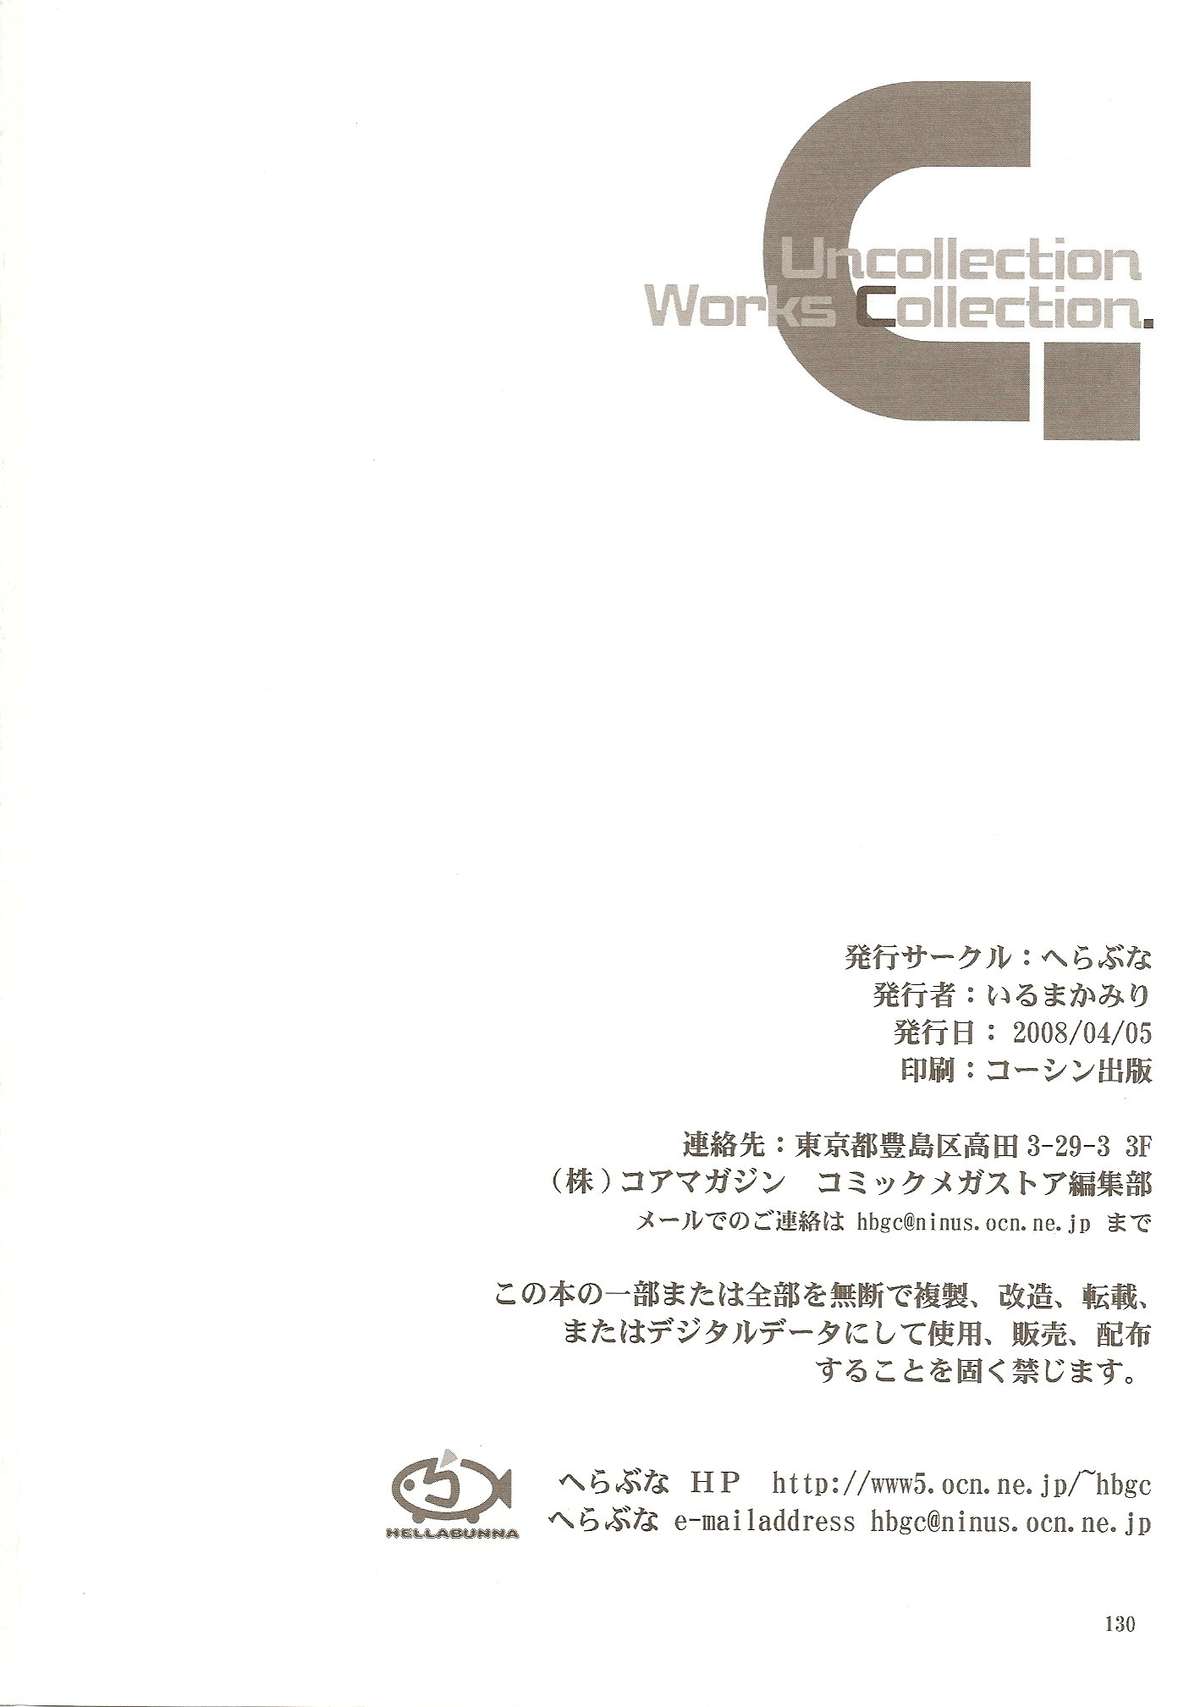 [へらぶな (いるまかみり)] Ucollection Works Collection